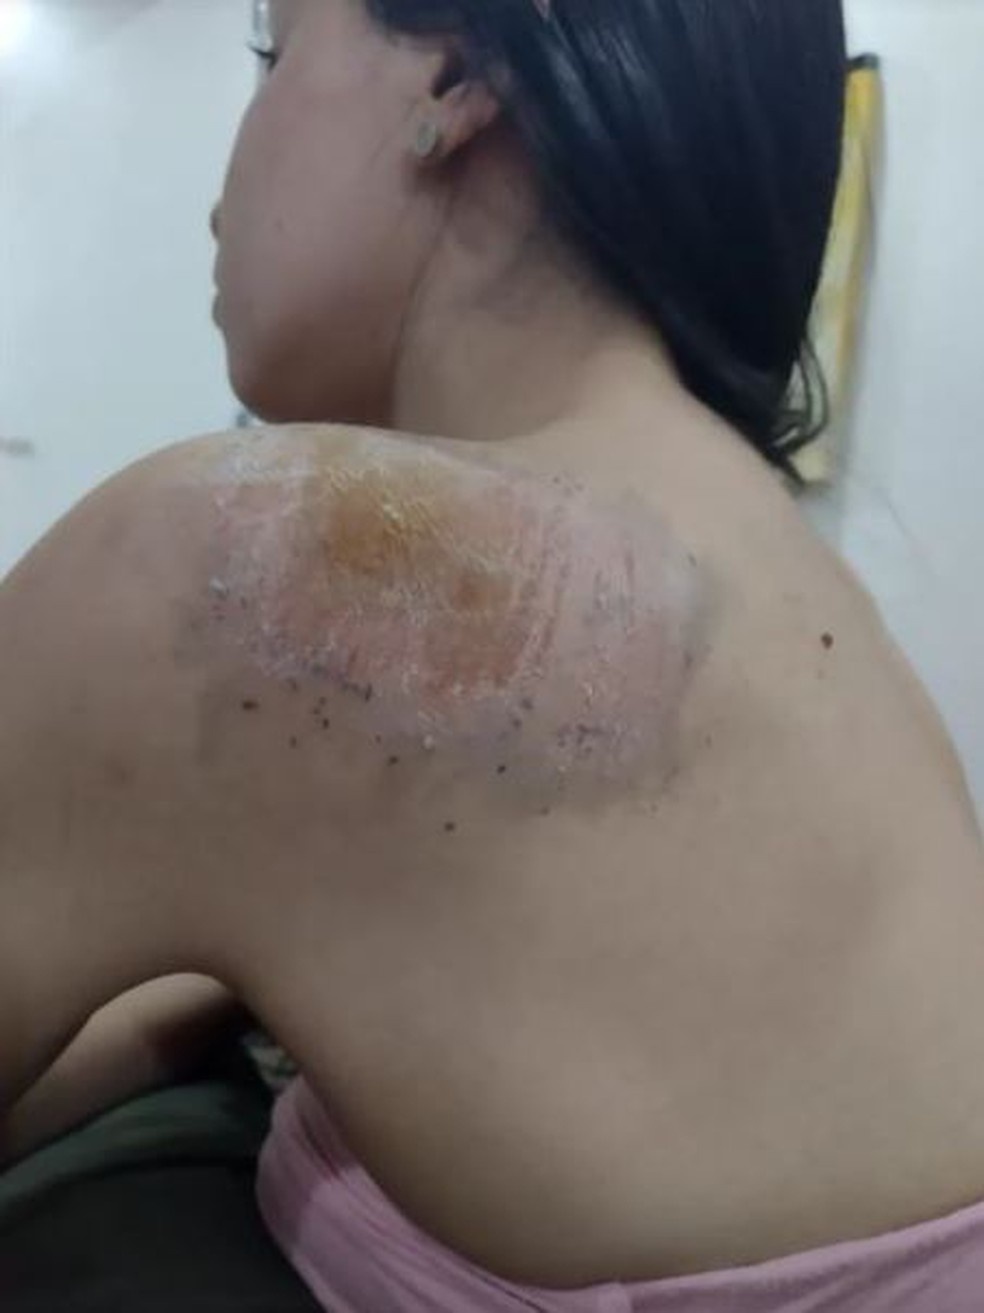 Andressa ficou com ralados pelo corpo após cair da bicicleta, em Palmas